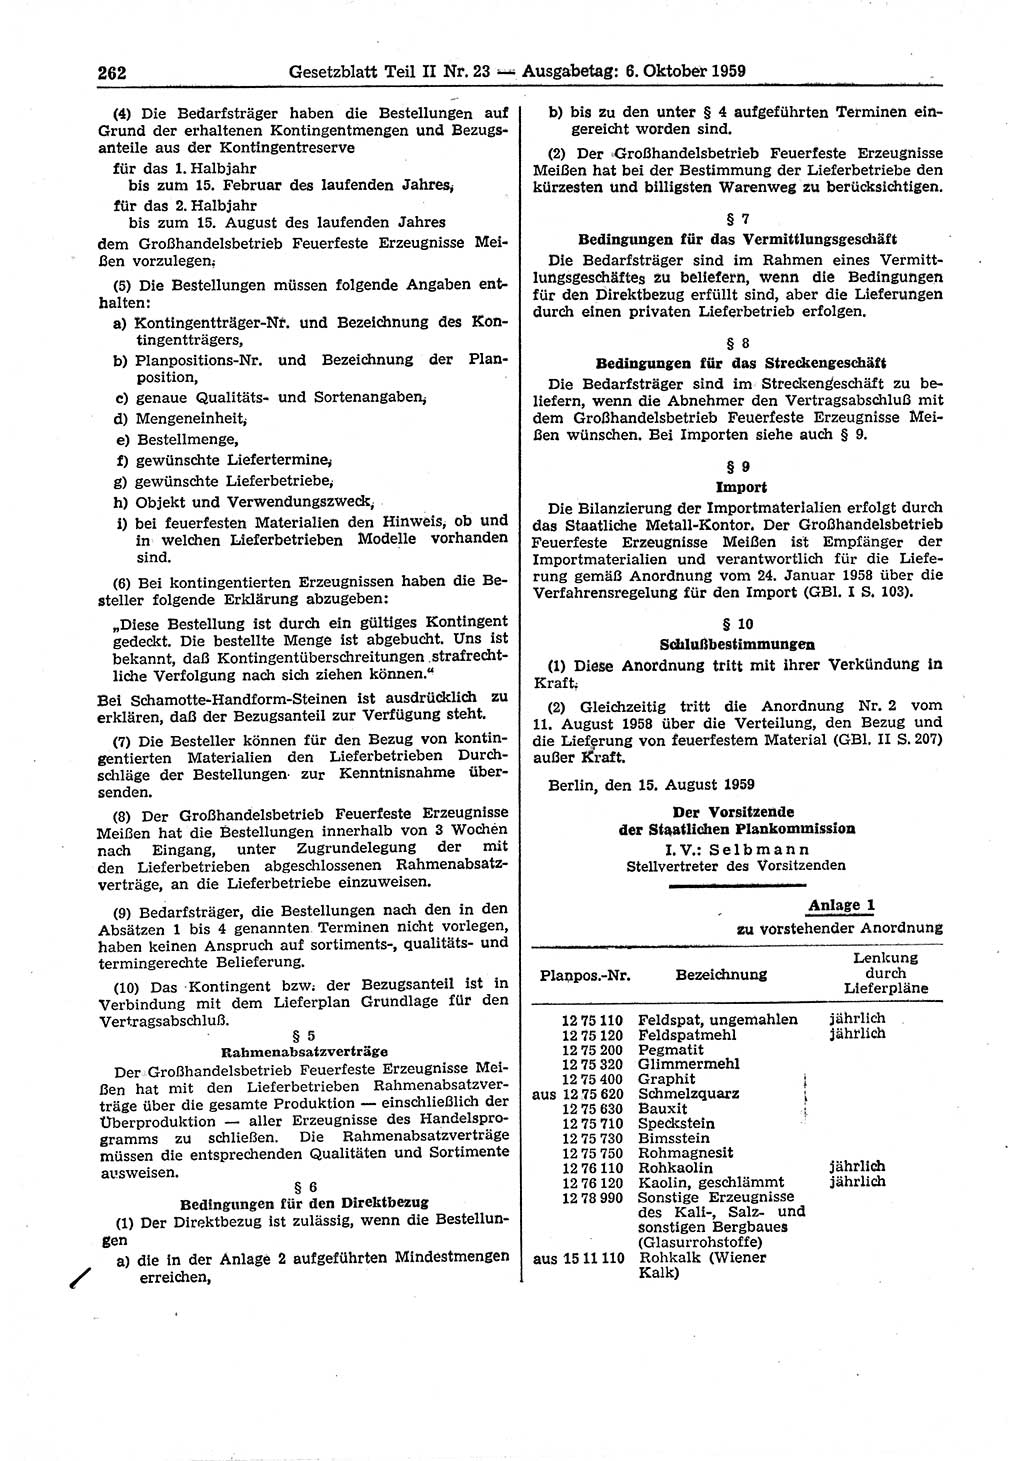 Gesetzblatt (GBl.) der Deutschen Demokratischen Republik (DDR) Teil ⅠⅠ 1959, Seite 262 (GBl. DDR ⅠⅠ 1959, S. 262)